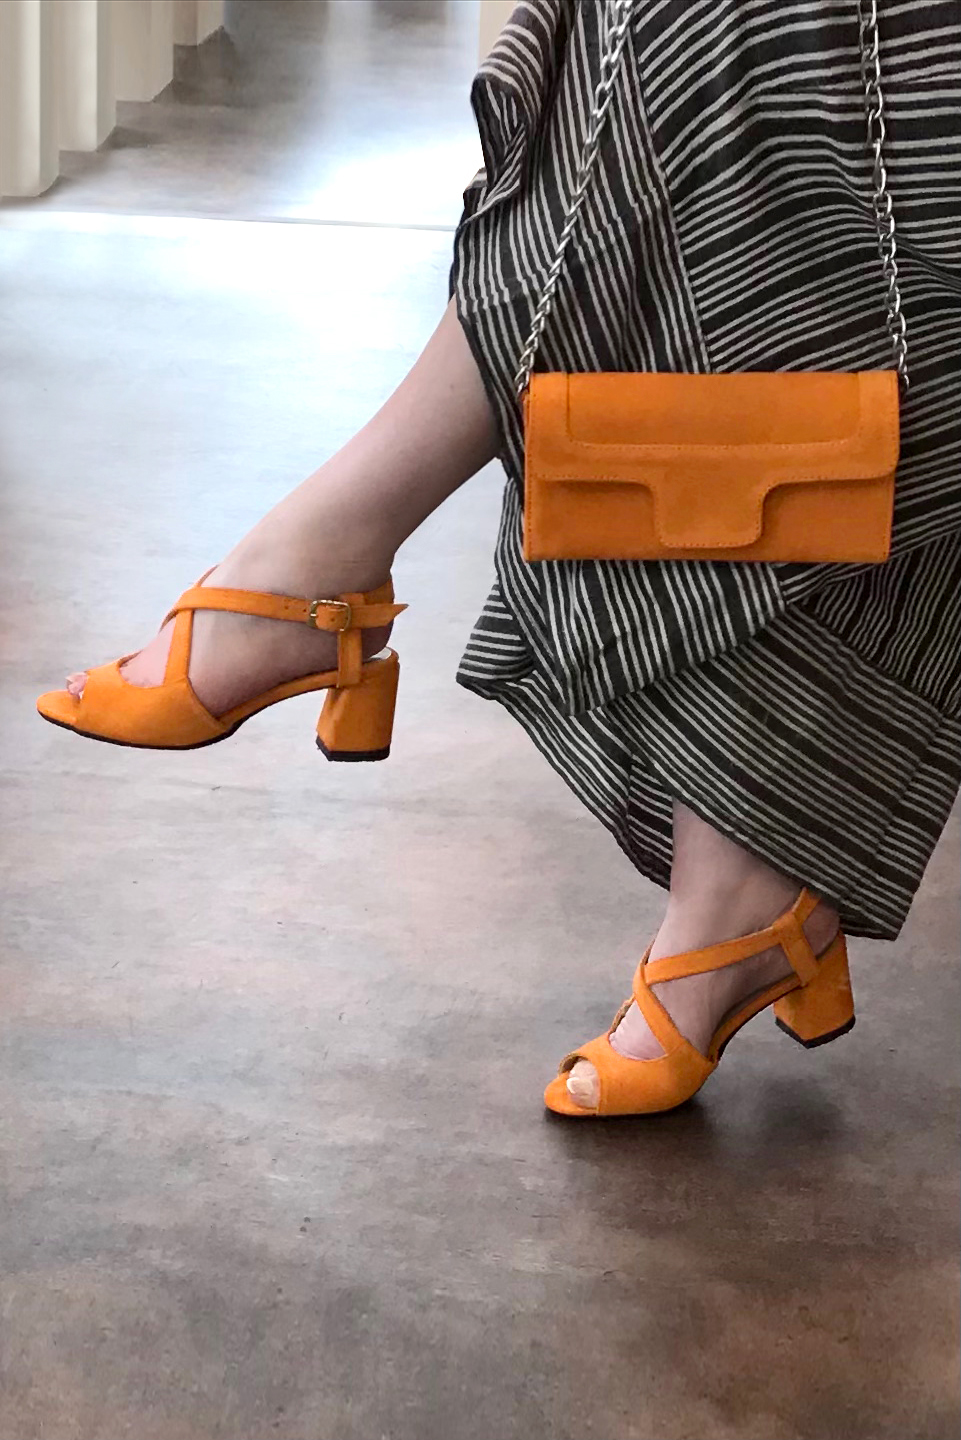 Sandales et ceinture assorties couleur orange abricot - Florence KOOIJMAN